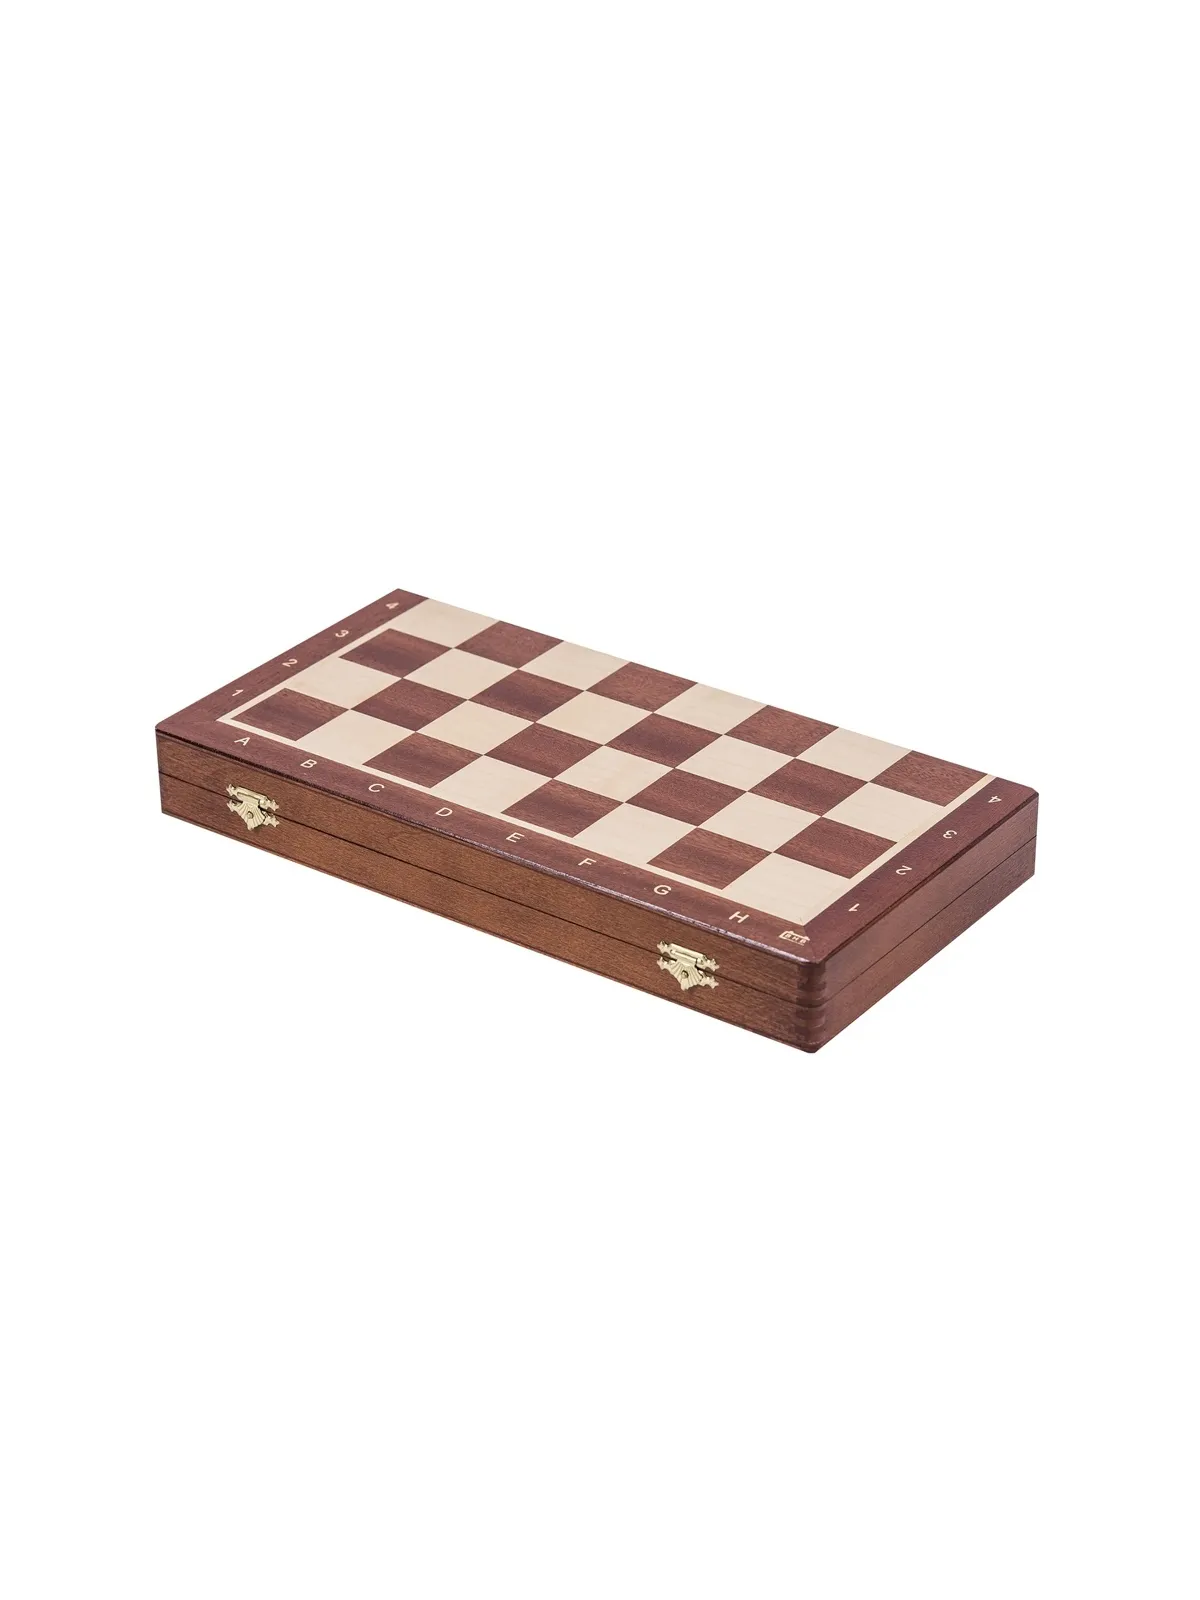 Schach Turnier Nr. 6 - Gold Edition